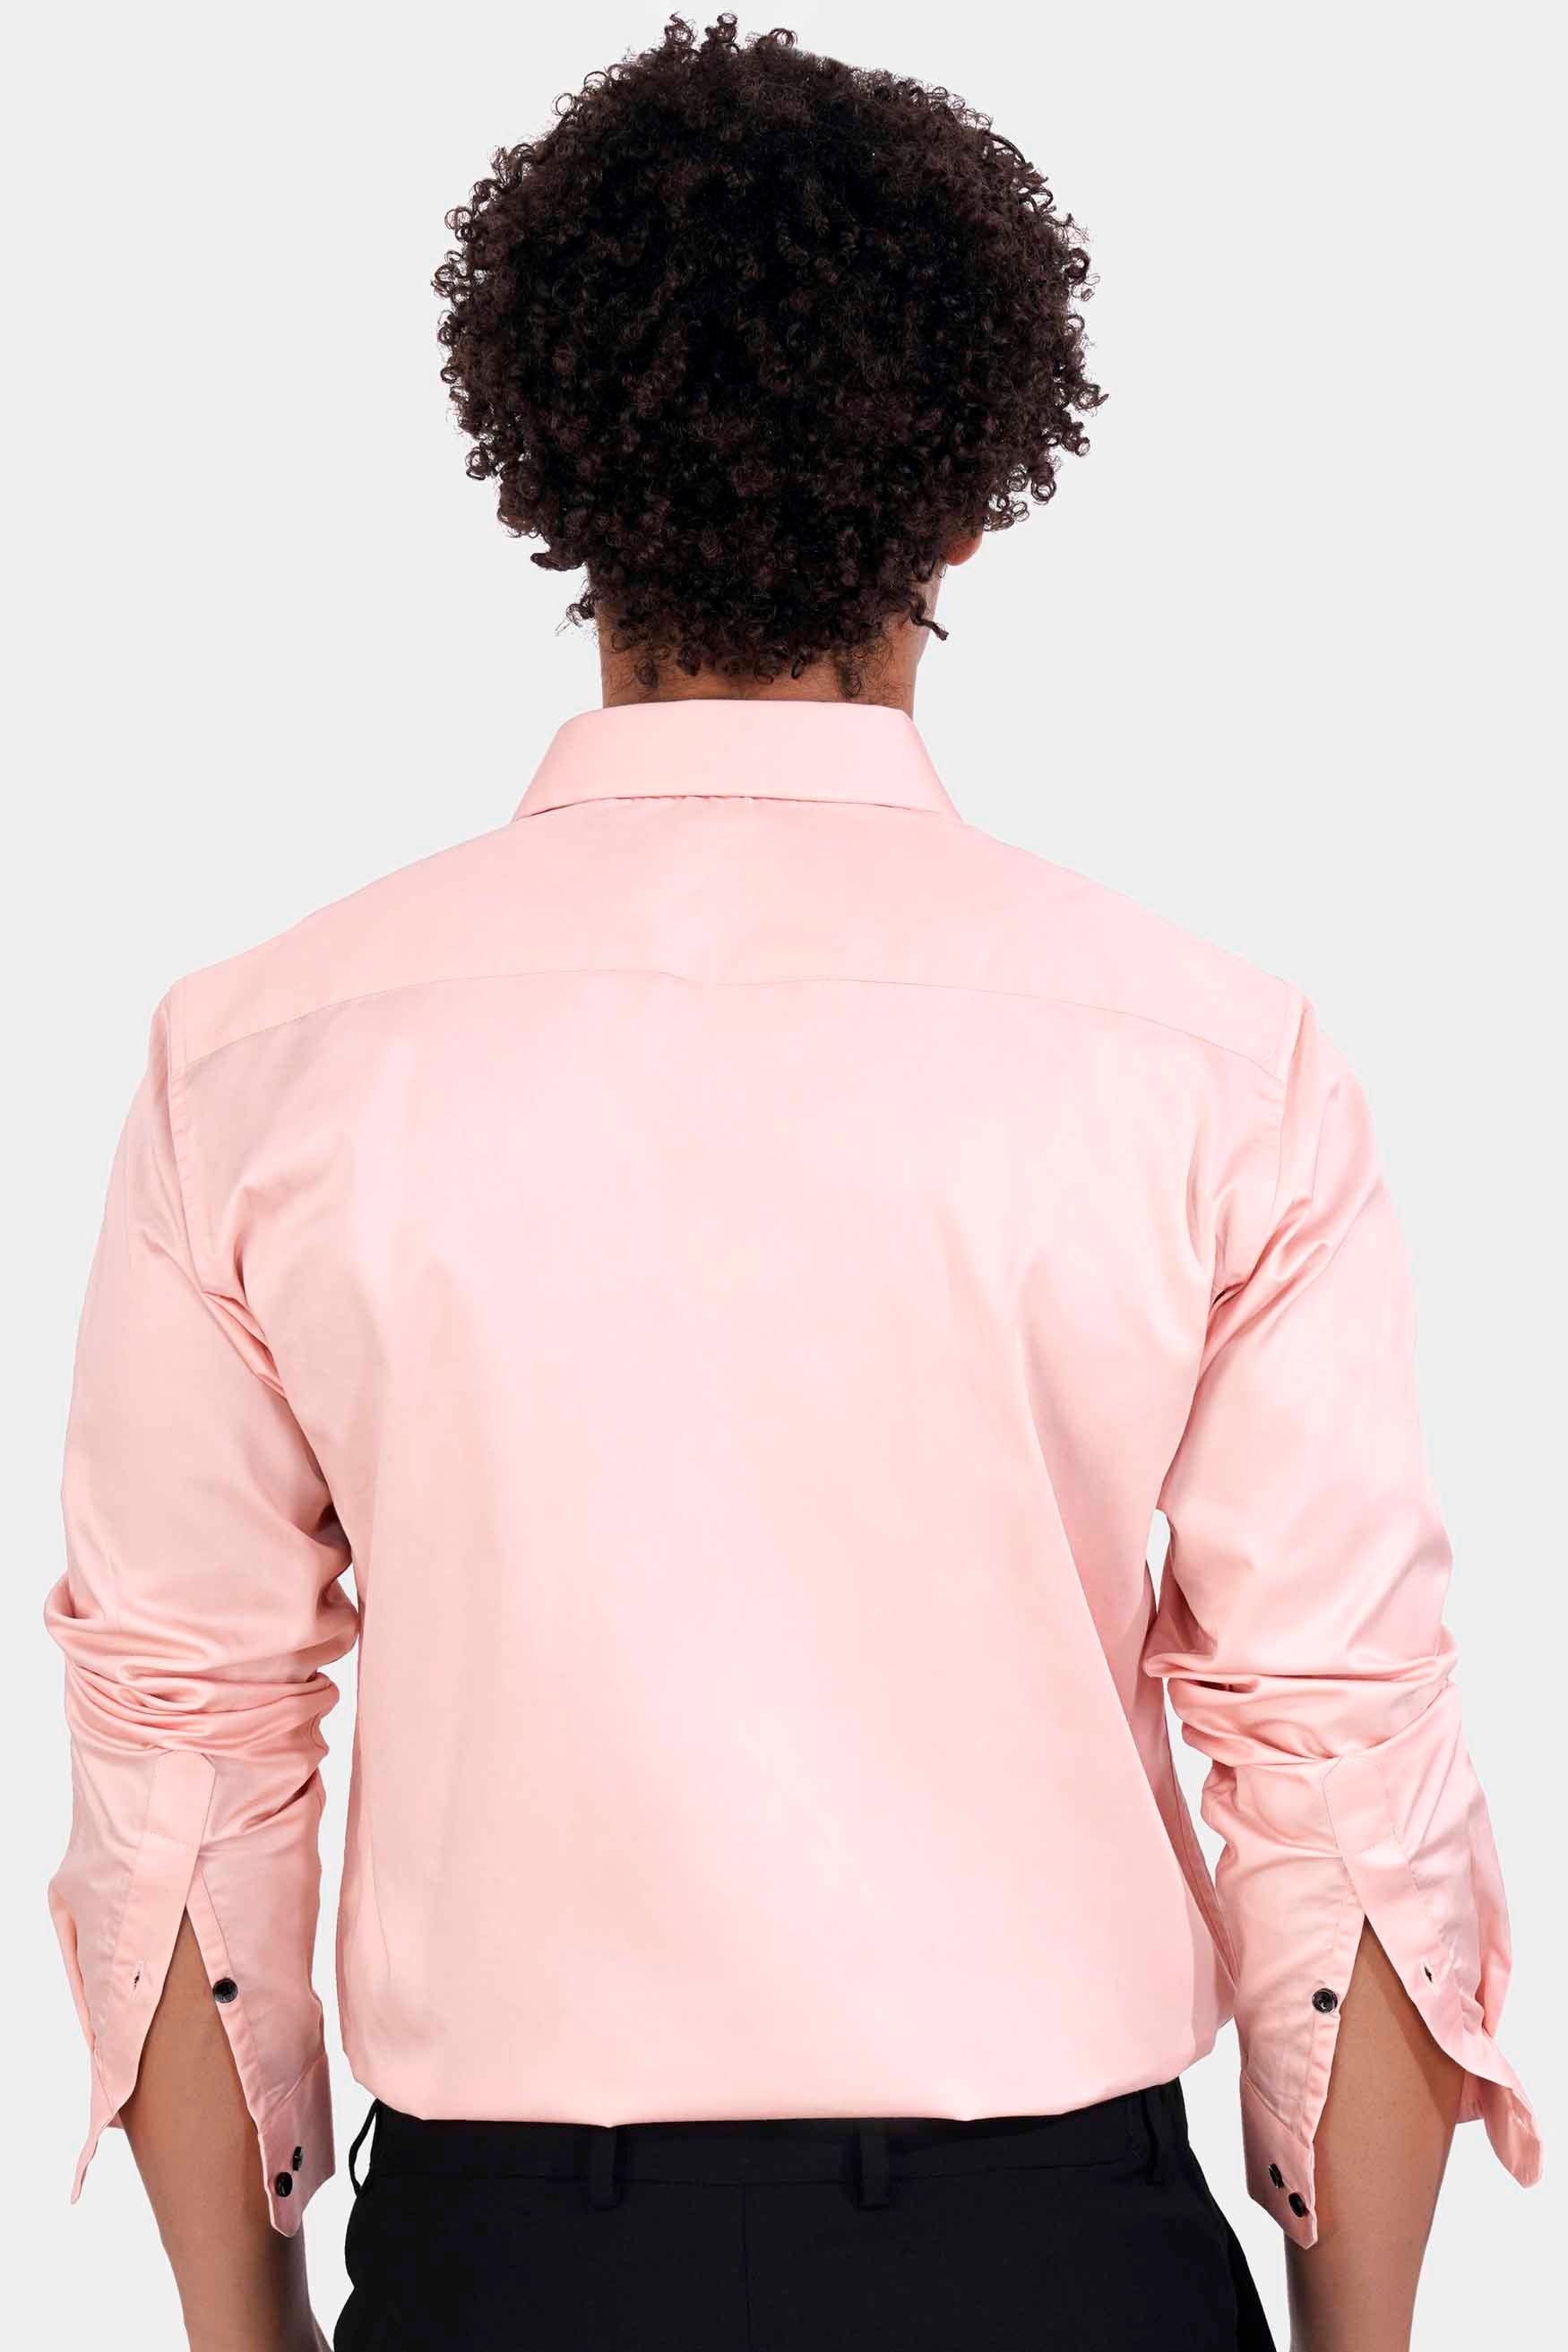 Crepe Peach Subtle Sheen Super Soft Premium Cotton Shirt